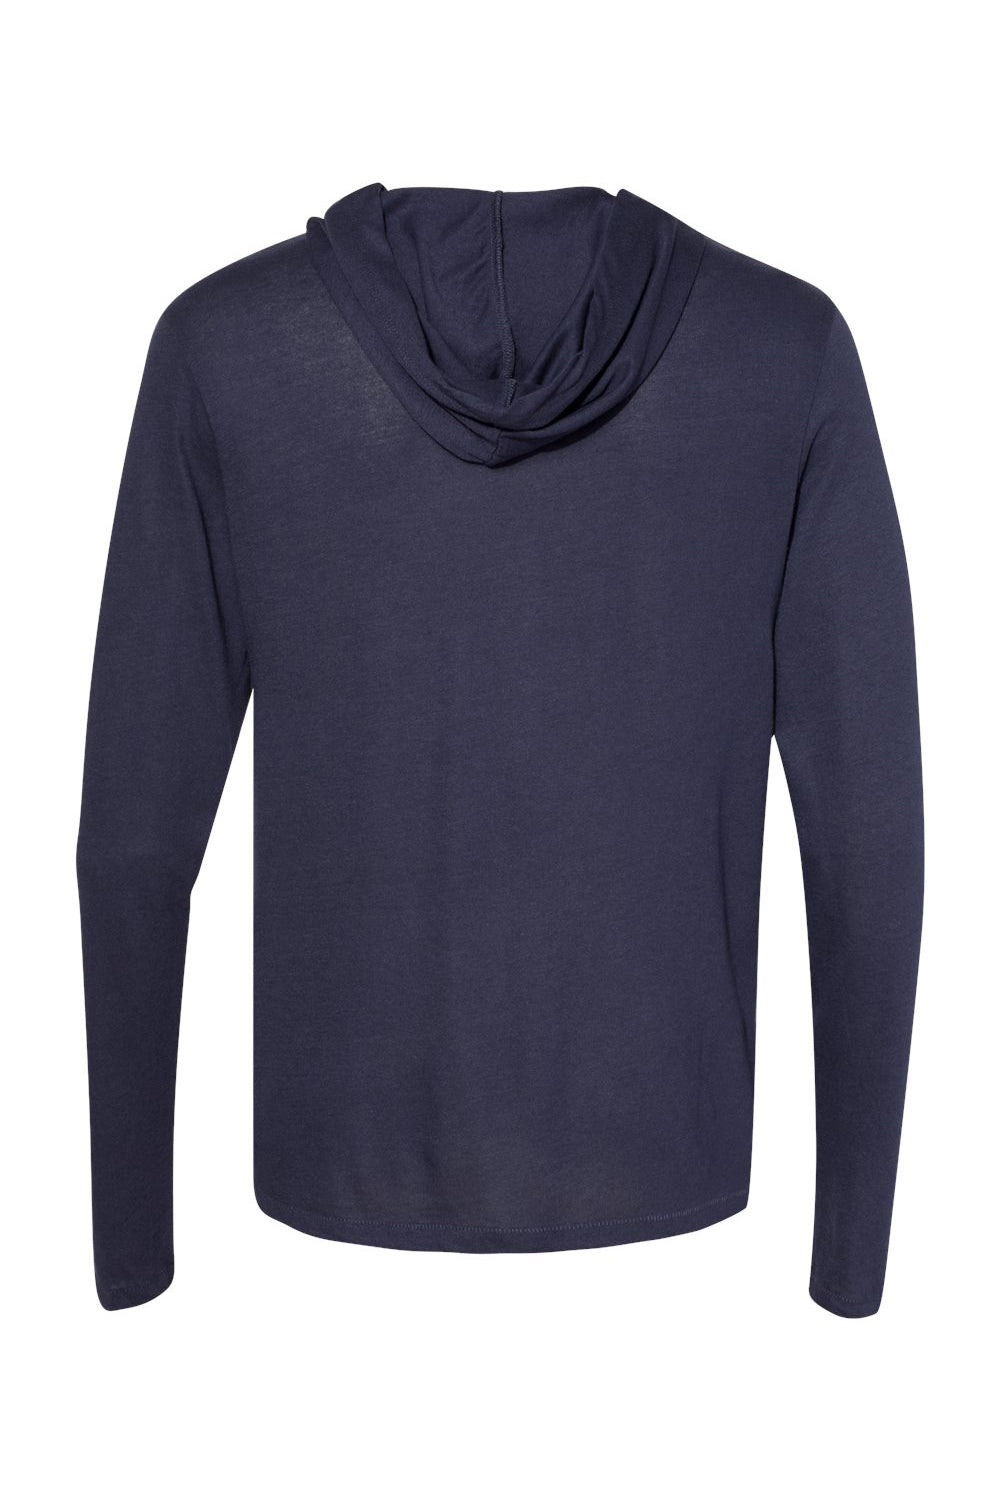 Alternative 5123 Mens Vintage Keeper Long Sleeve Hooded T-Shirt Hoodie Navy Blue Flat Back